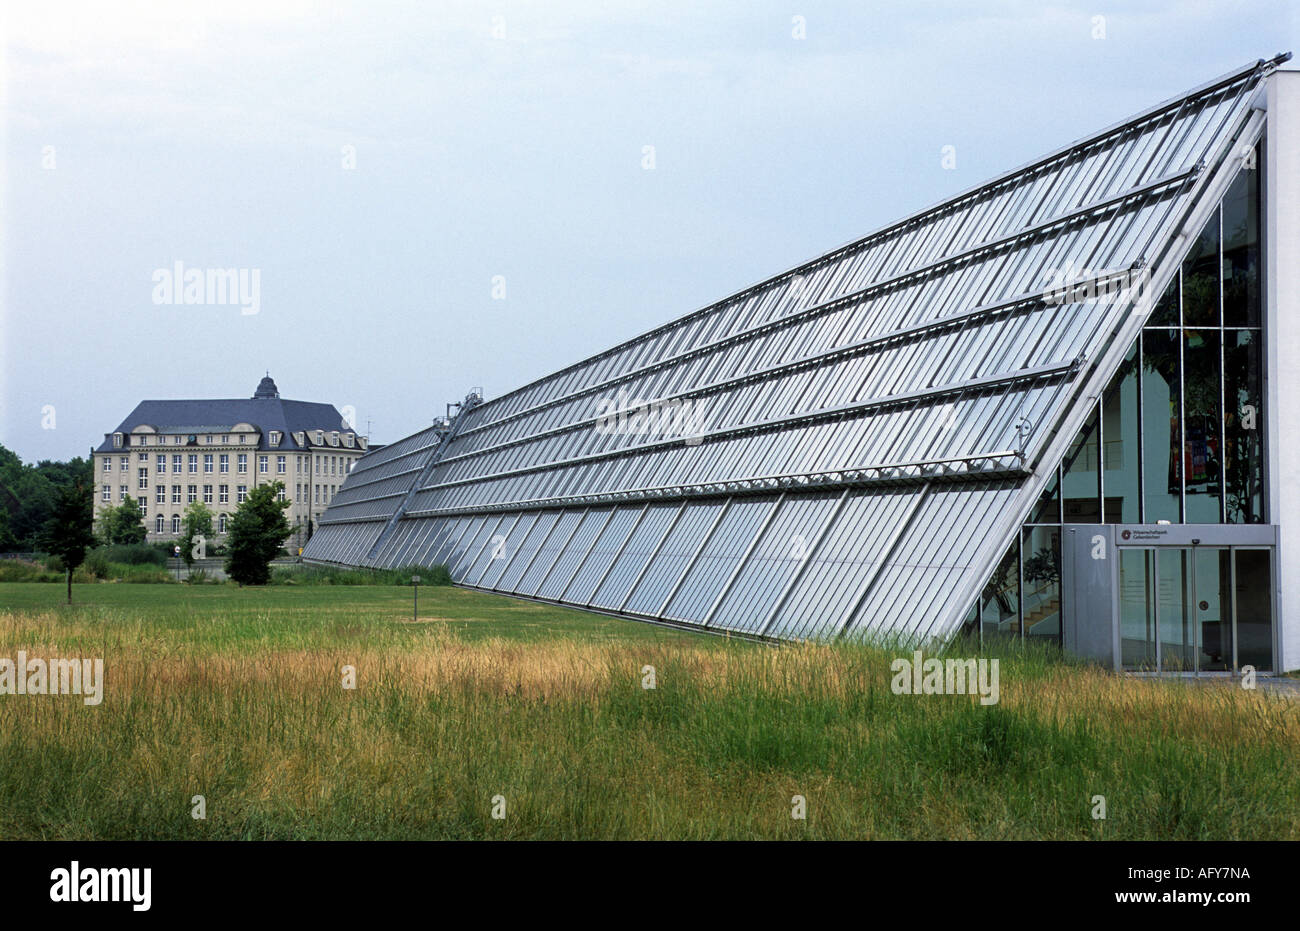 Le Rhine-Elbe Science Park, un bâtiment durable avec des panneaux solaires, Gelsenkirchen, Rhénanie du Nord-Westphalie, Allemagne. Banque D'Images